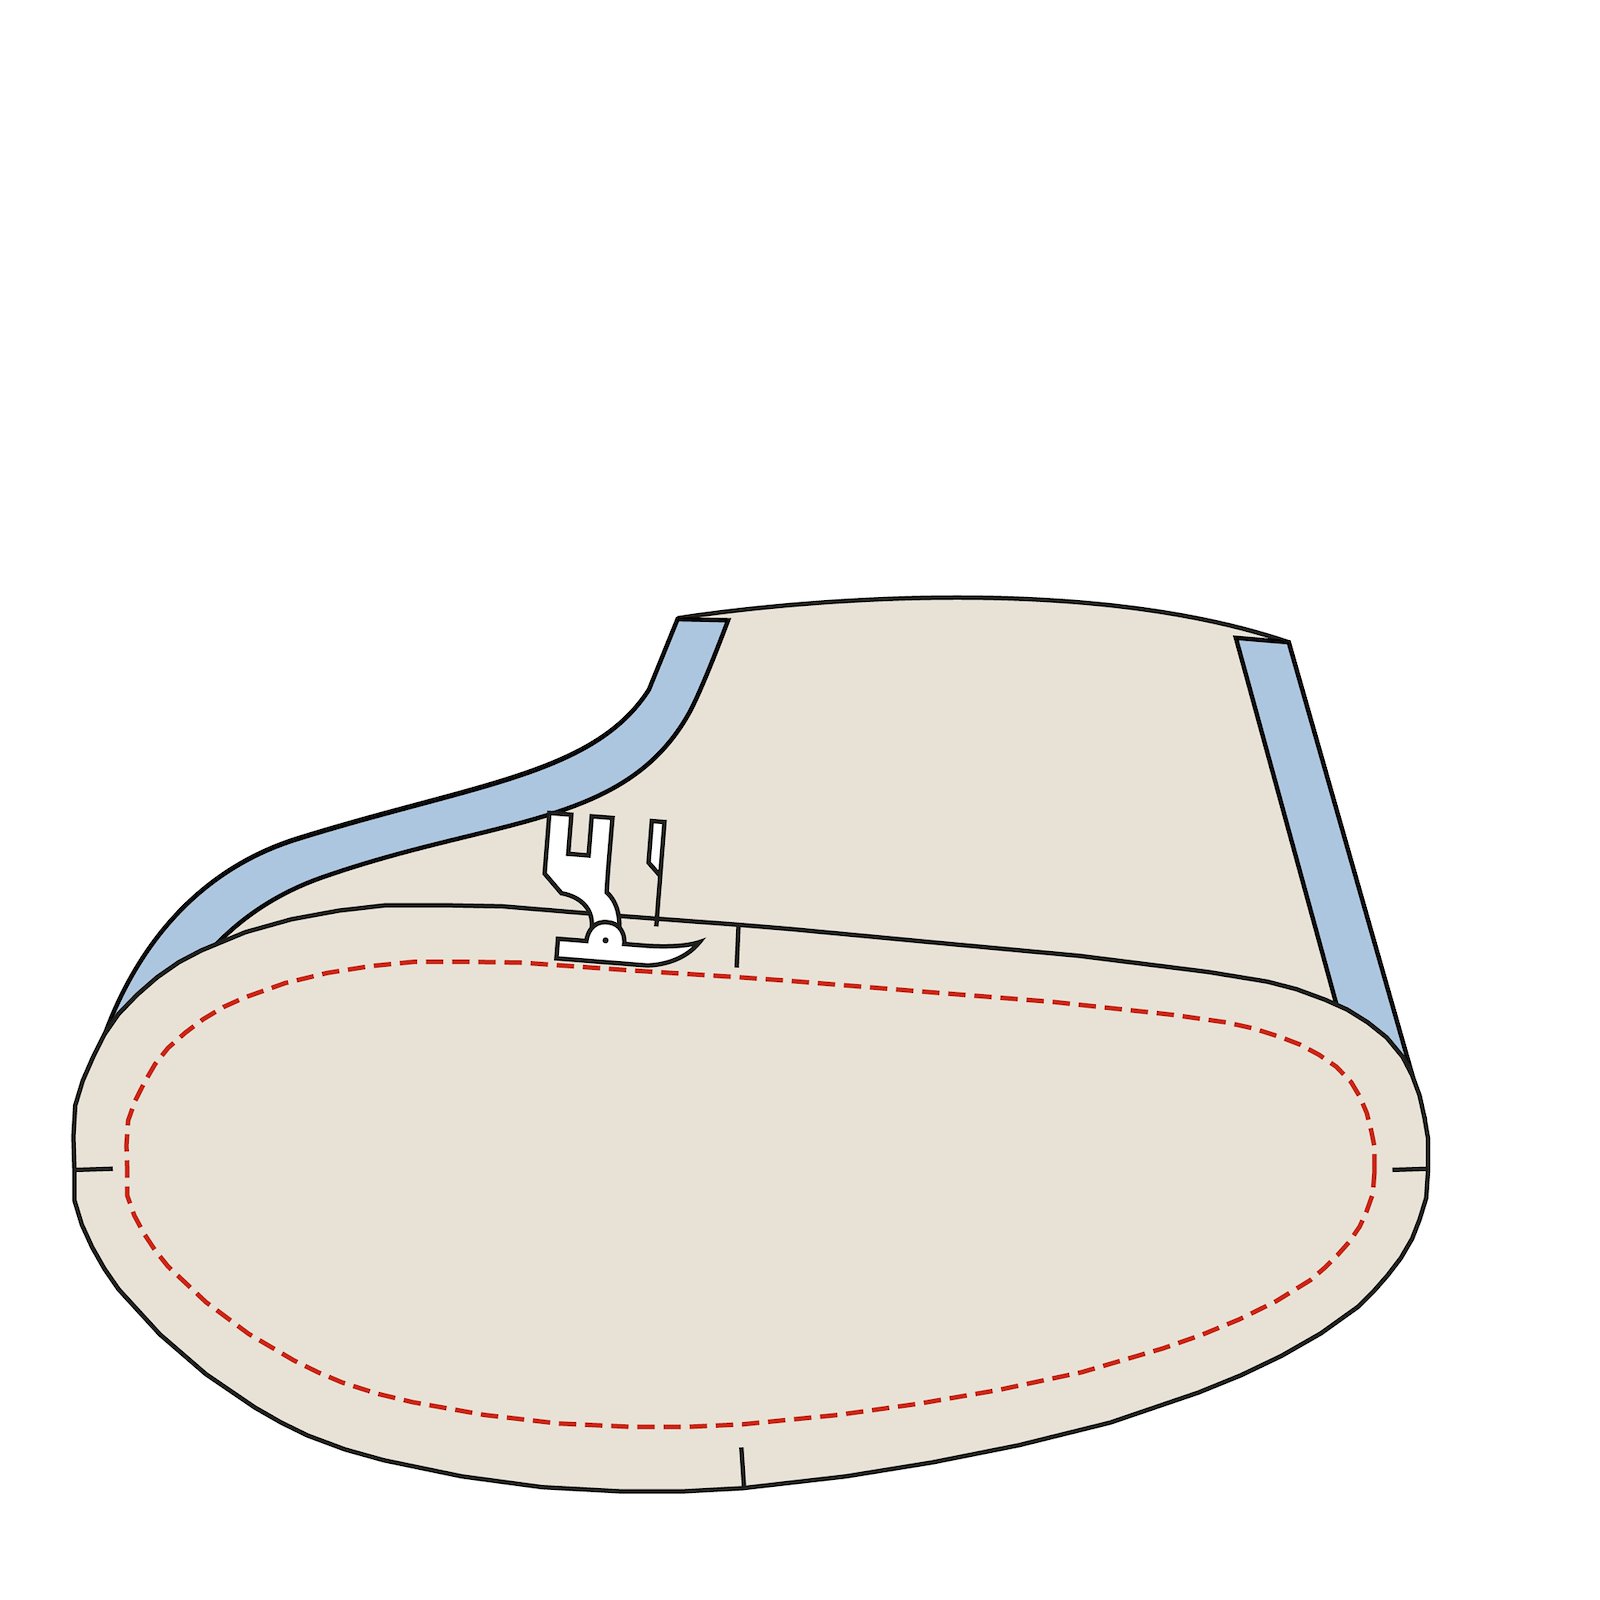 Sewing pattern: Chrildrens Slippers DIY2009_step4.jpg